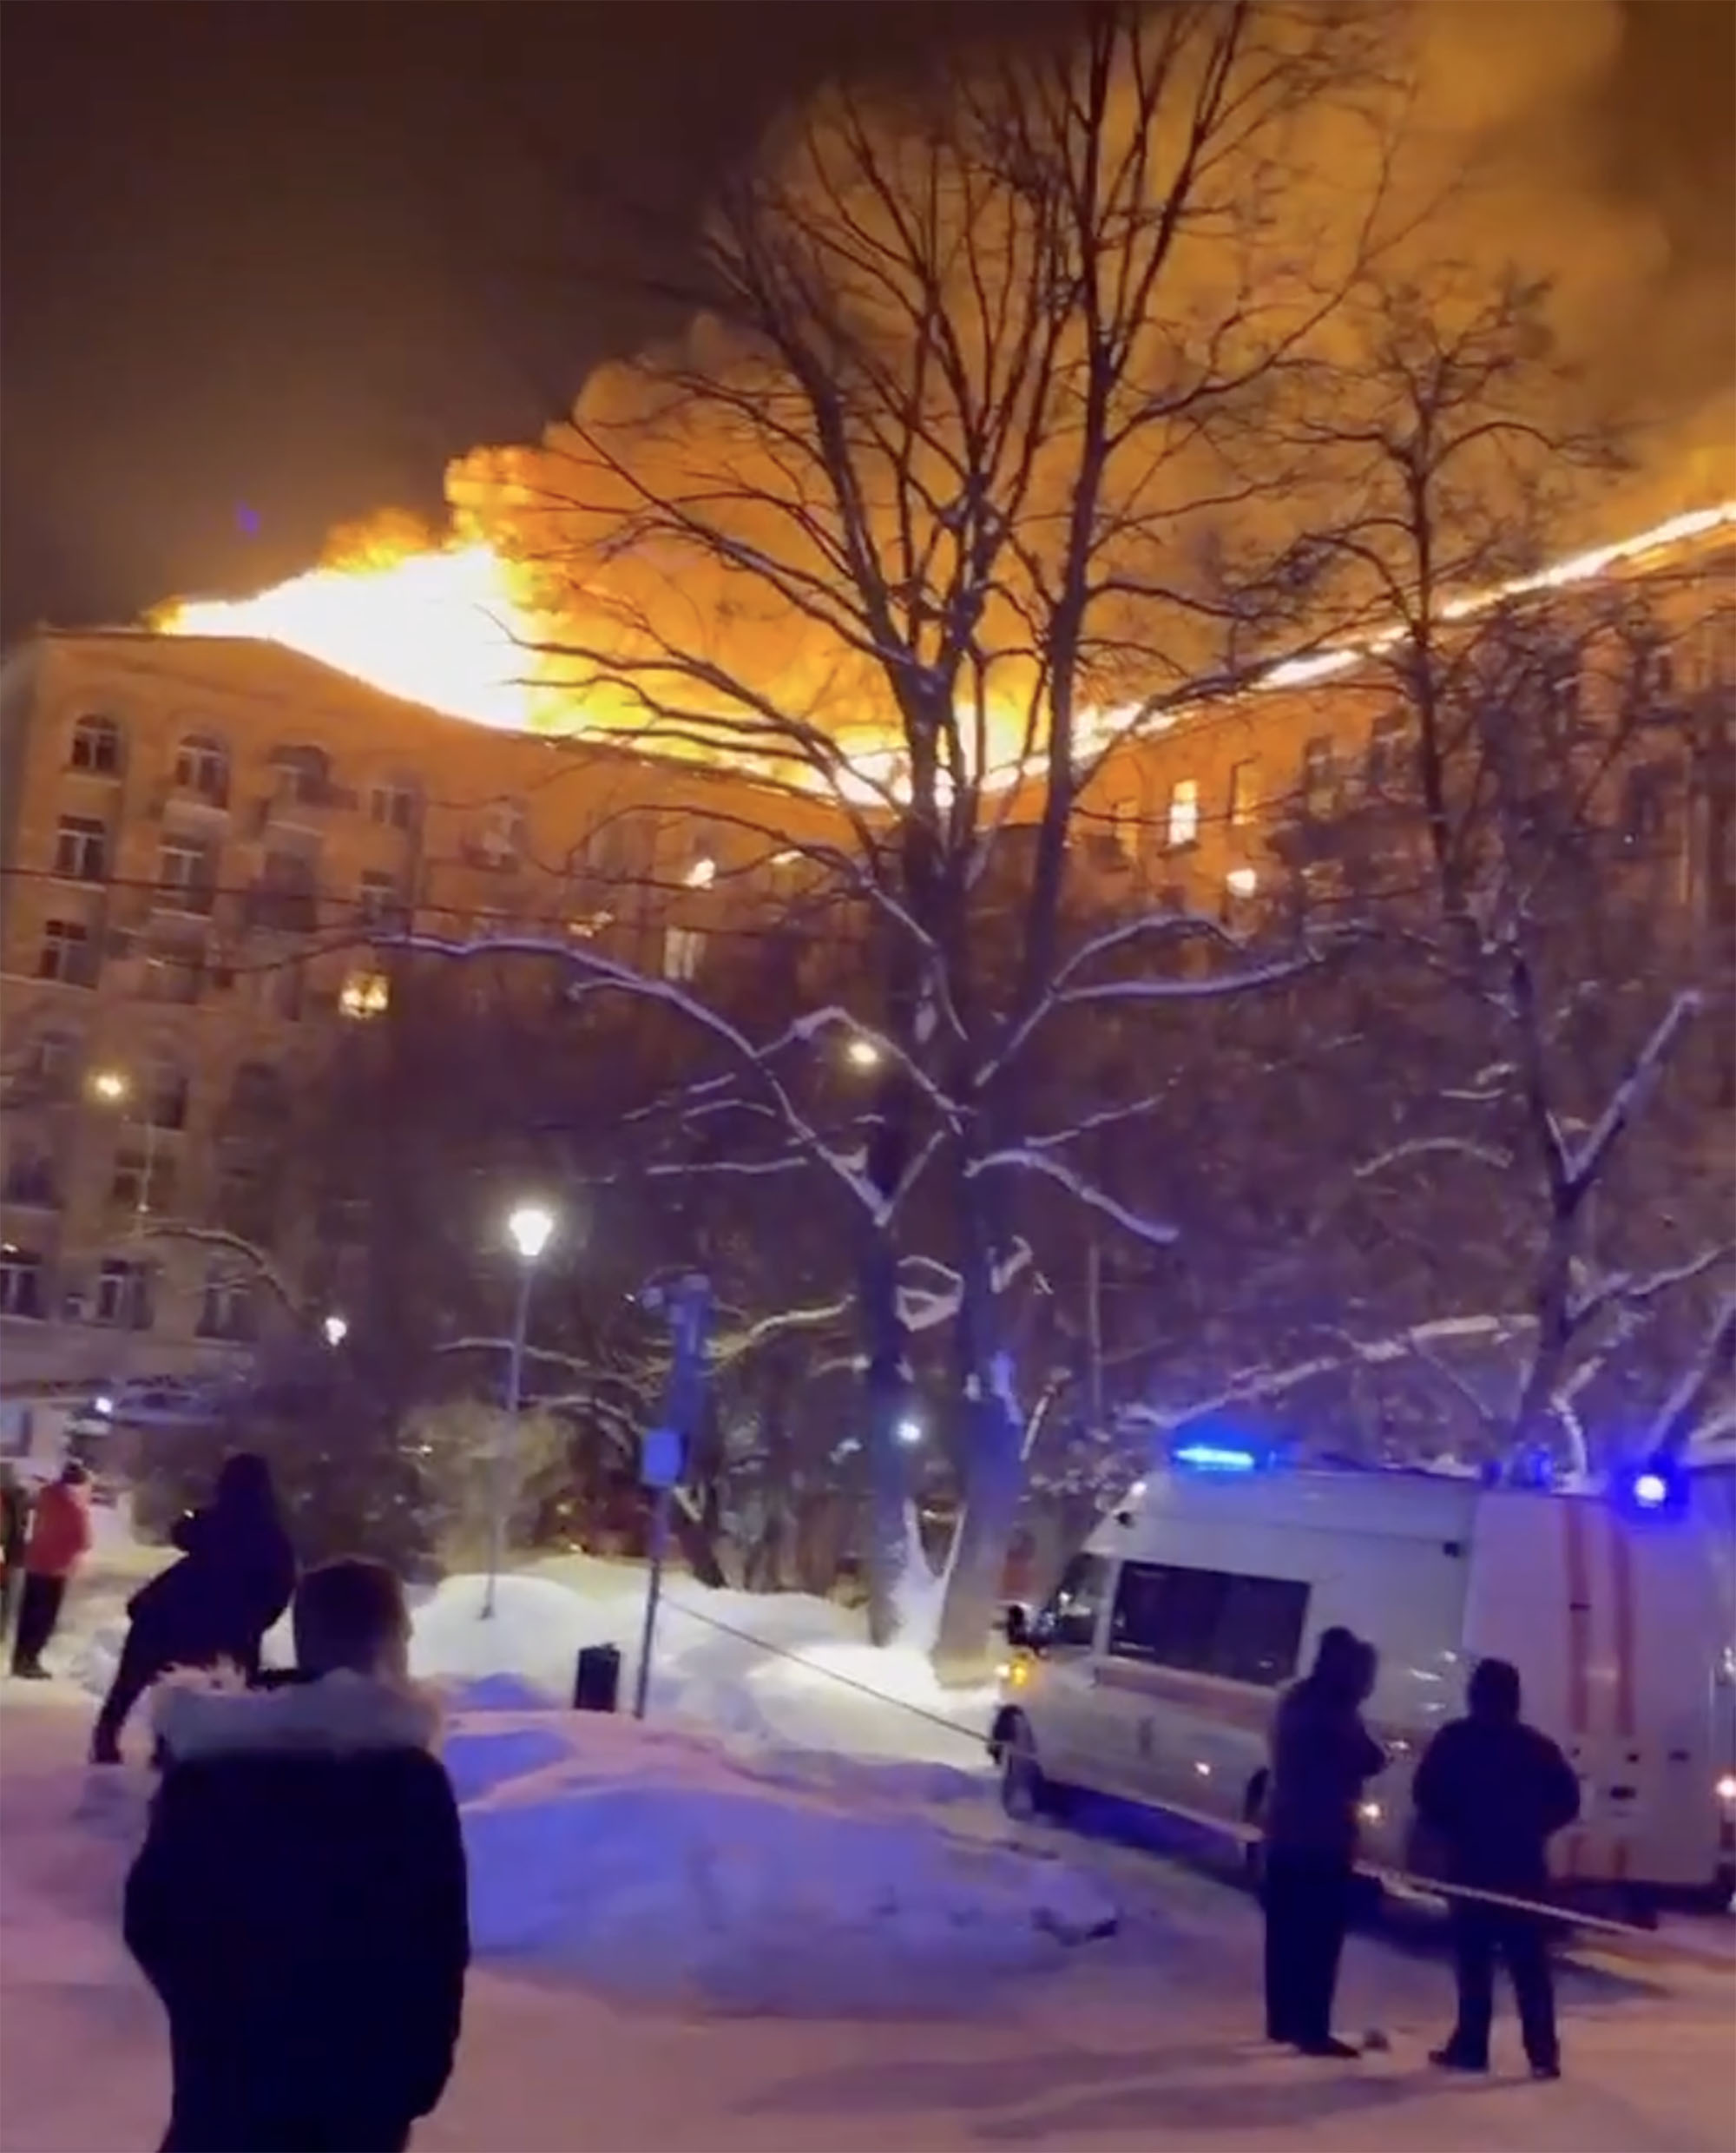 Die Moskauer Behörden berichteten, dass dies der größte Brand in der Stadt in der modernen Geschichte Russlands sei